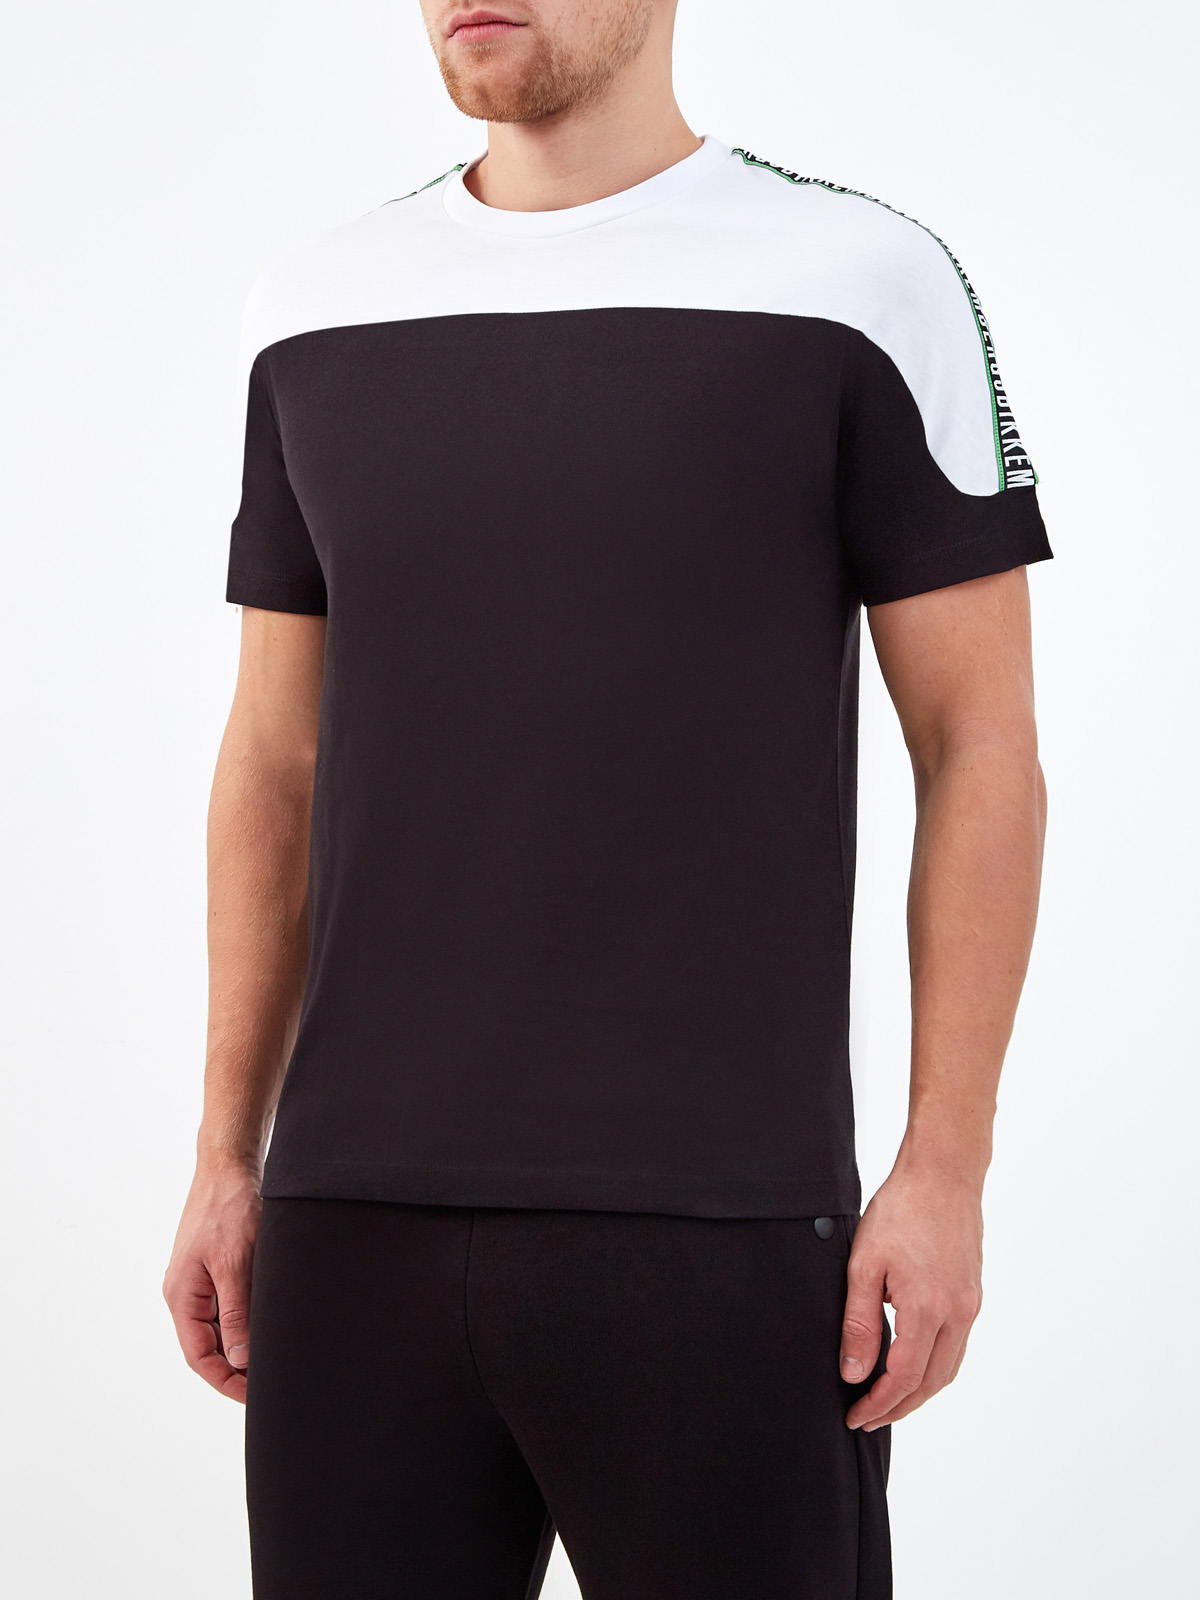 Хлопковая футболка в стиле colorblock с лентой-аппликацией BIKKEMBERGS, цвет черно-белый, размер S;M;L;XL;2XL;3XL - фото 3